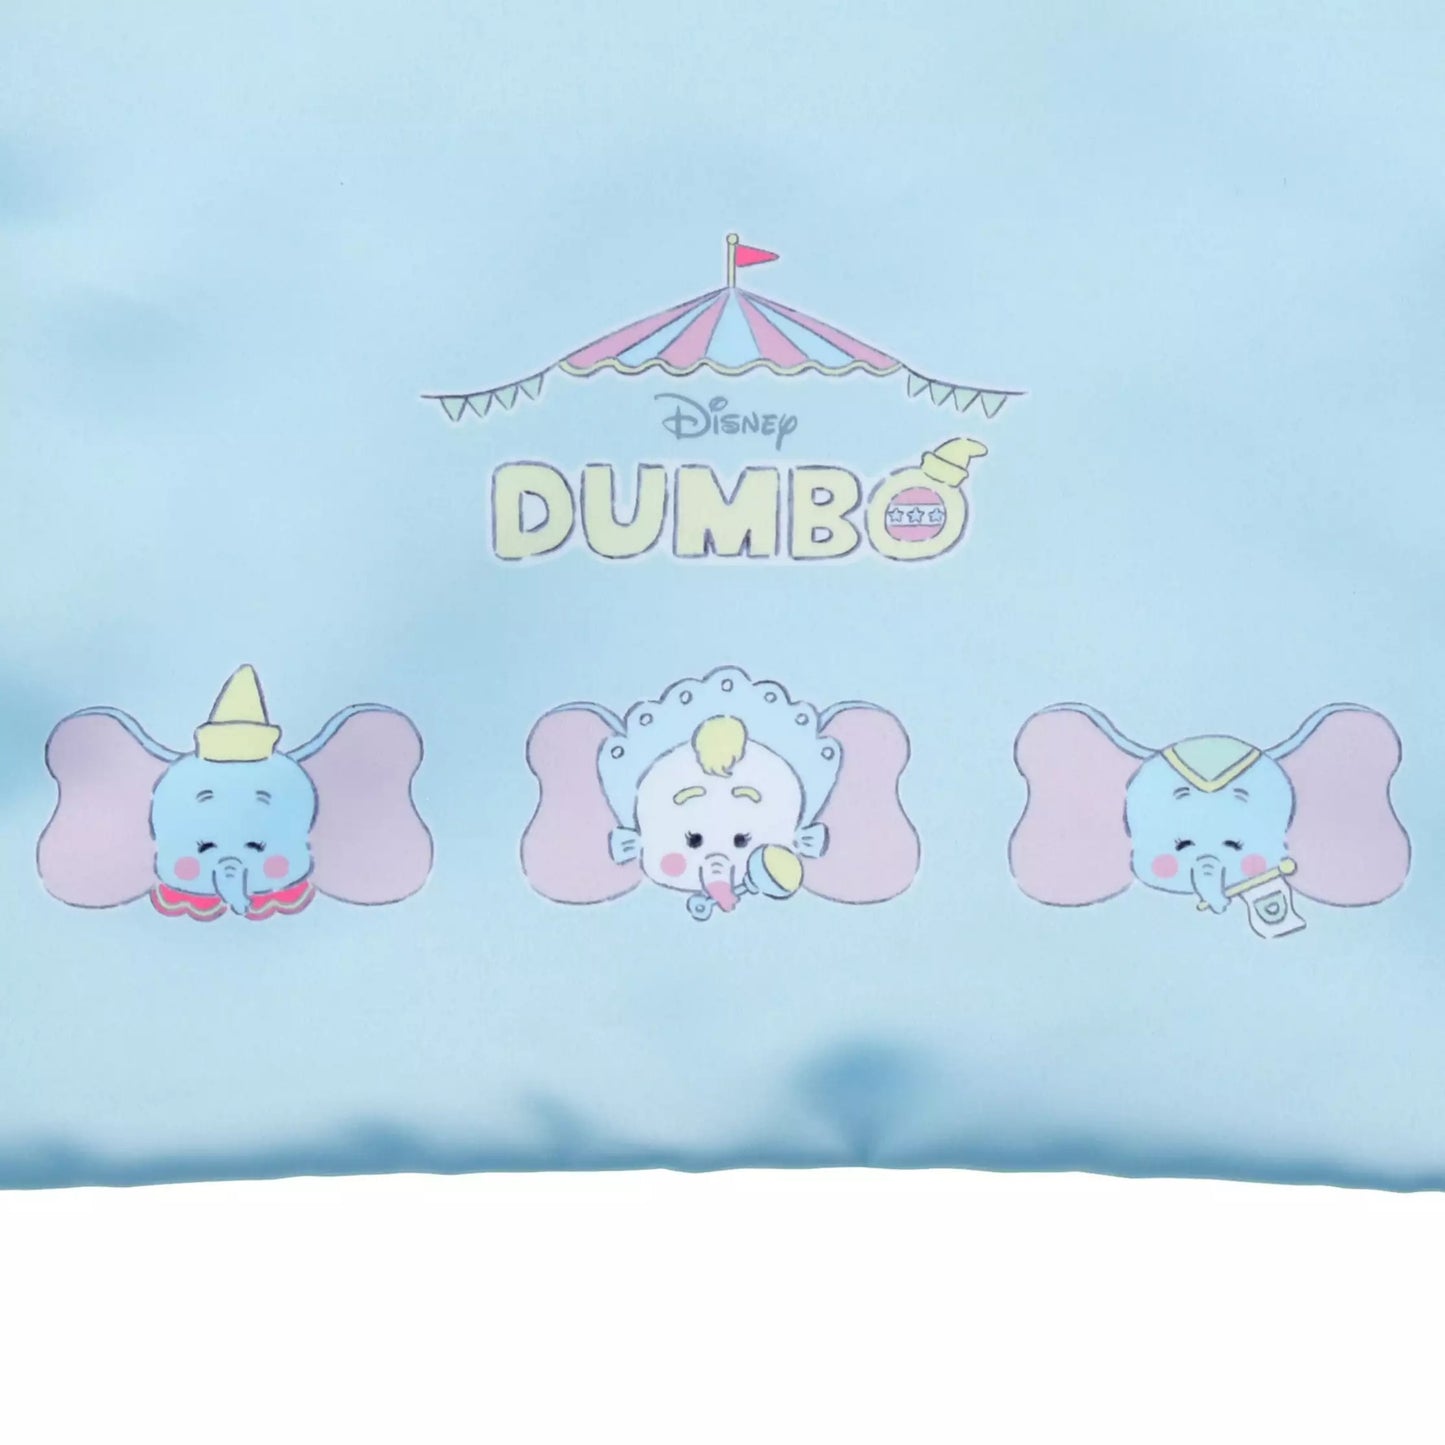 Dumbo 手提索袋 Illustrated by Noriyuki Echigawa